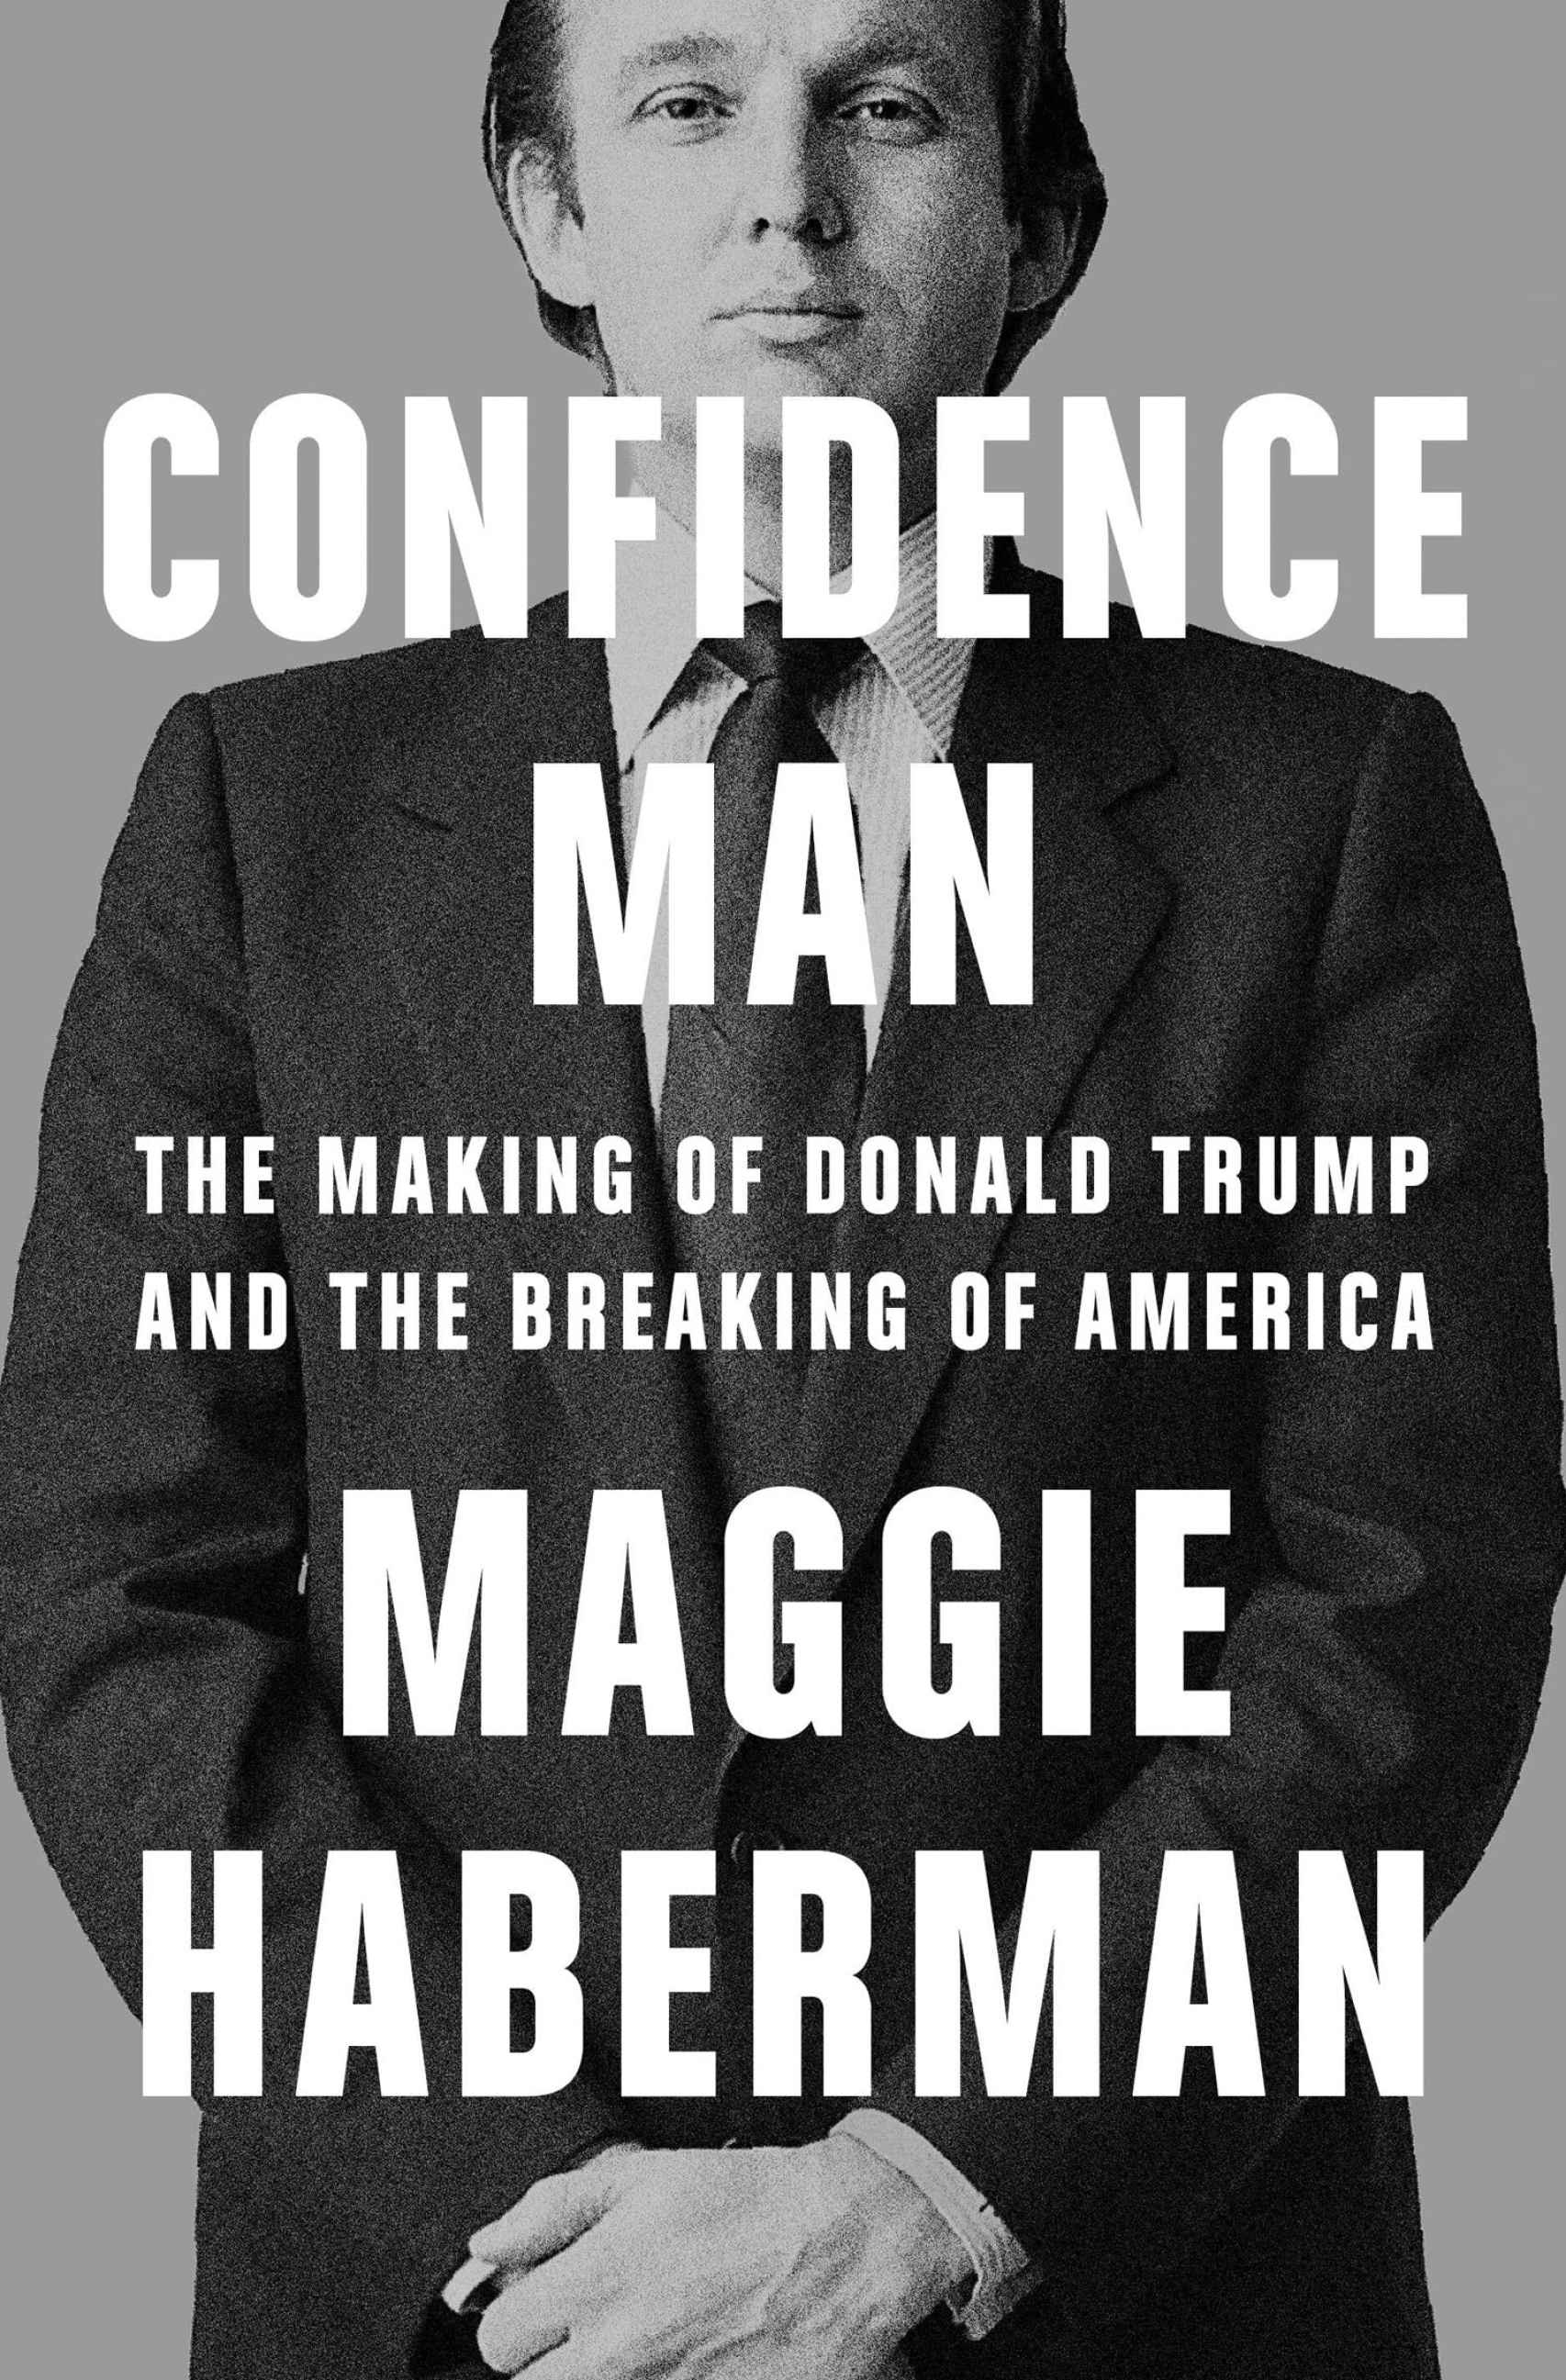 Portada del libro de Maggie Haberman sobre Trump.